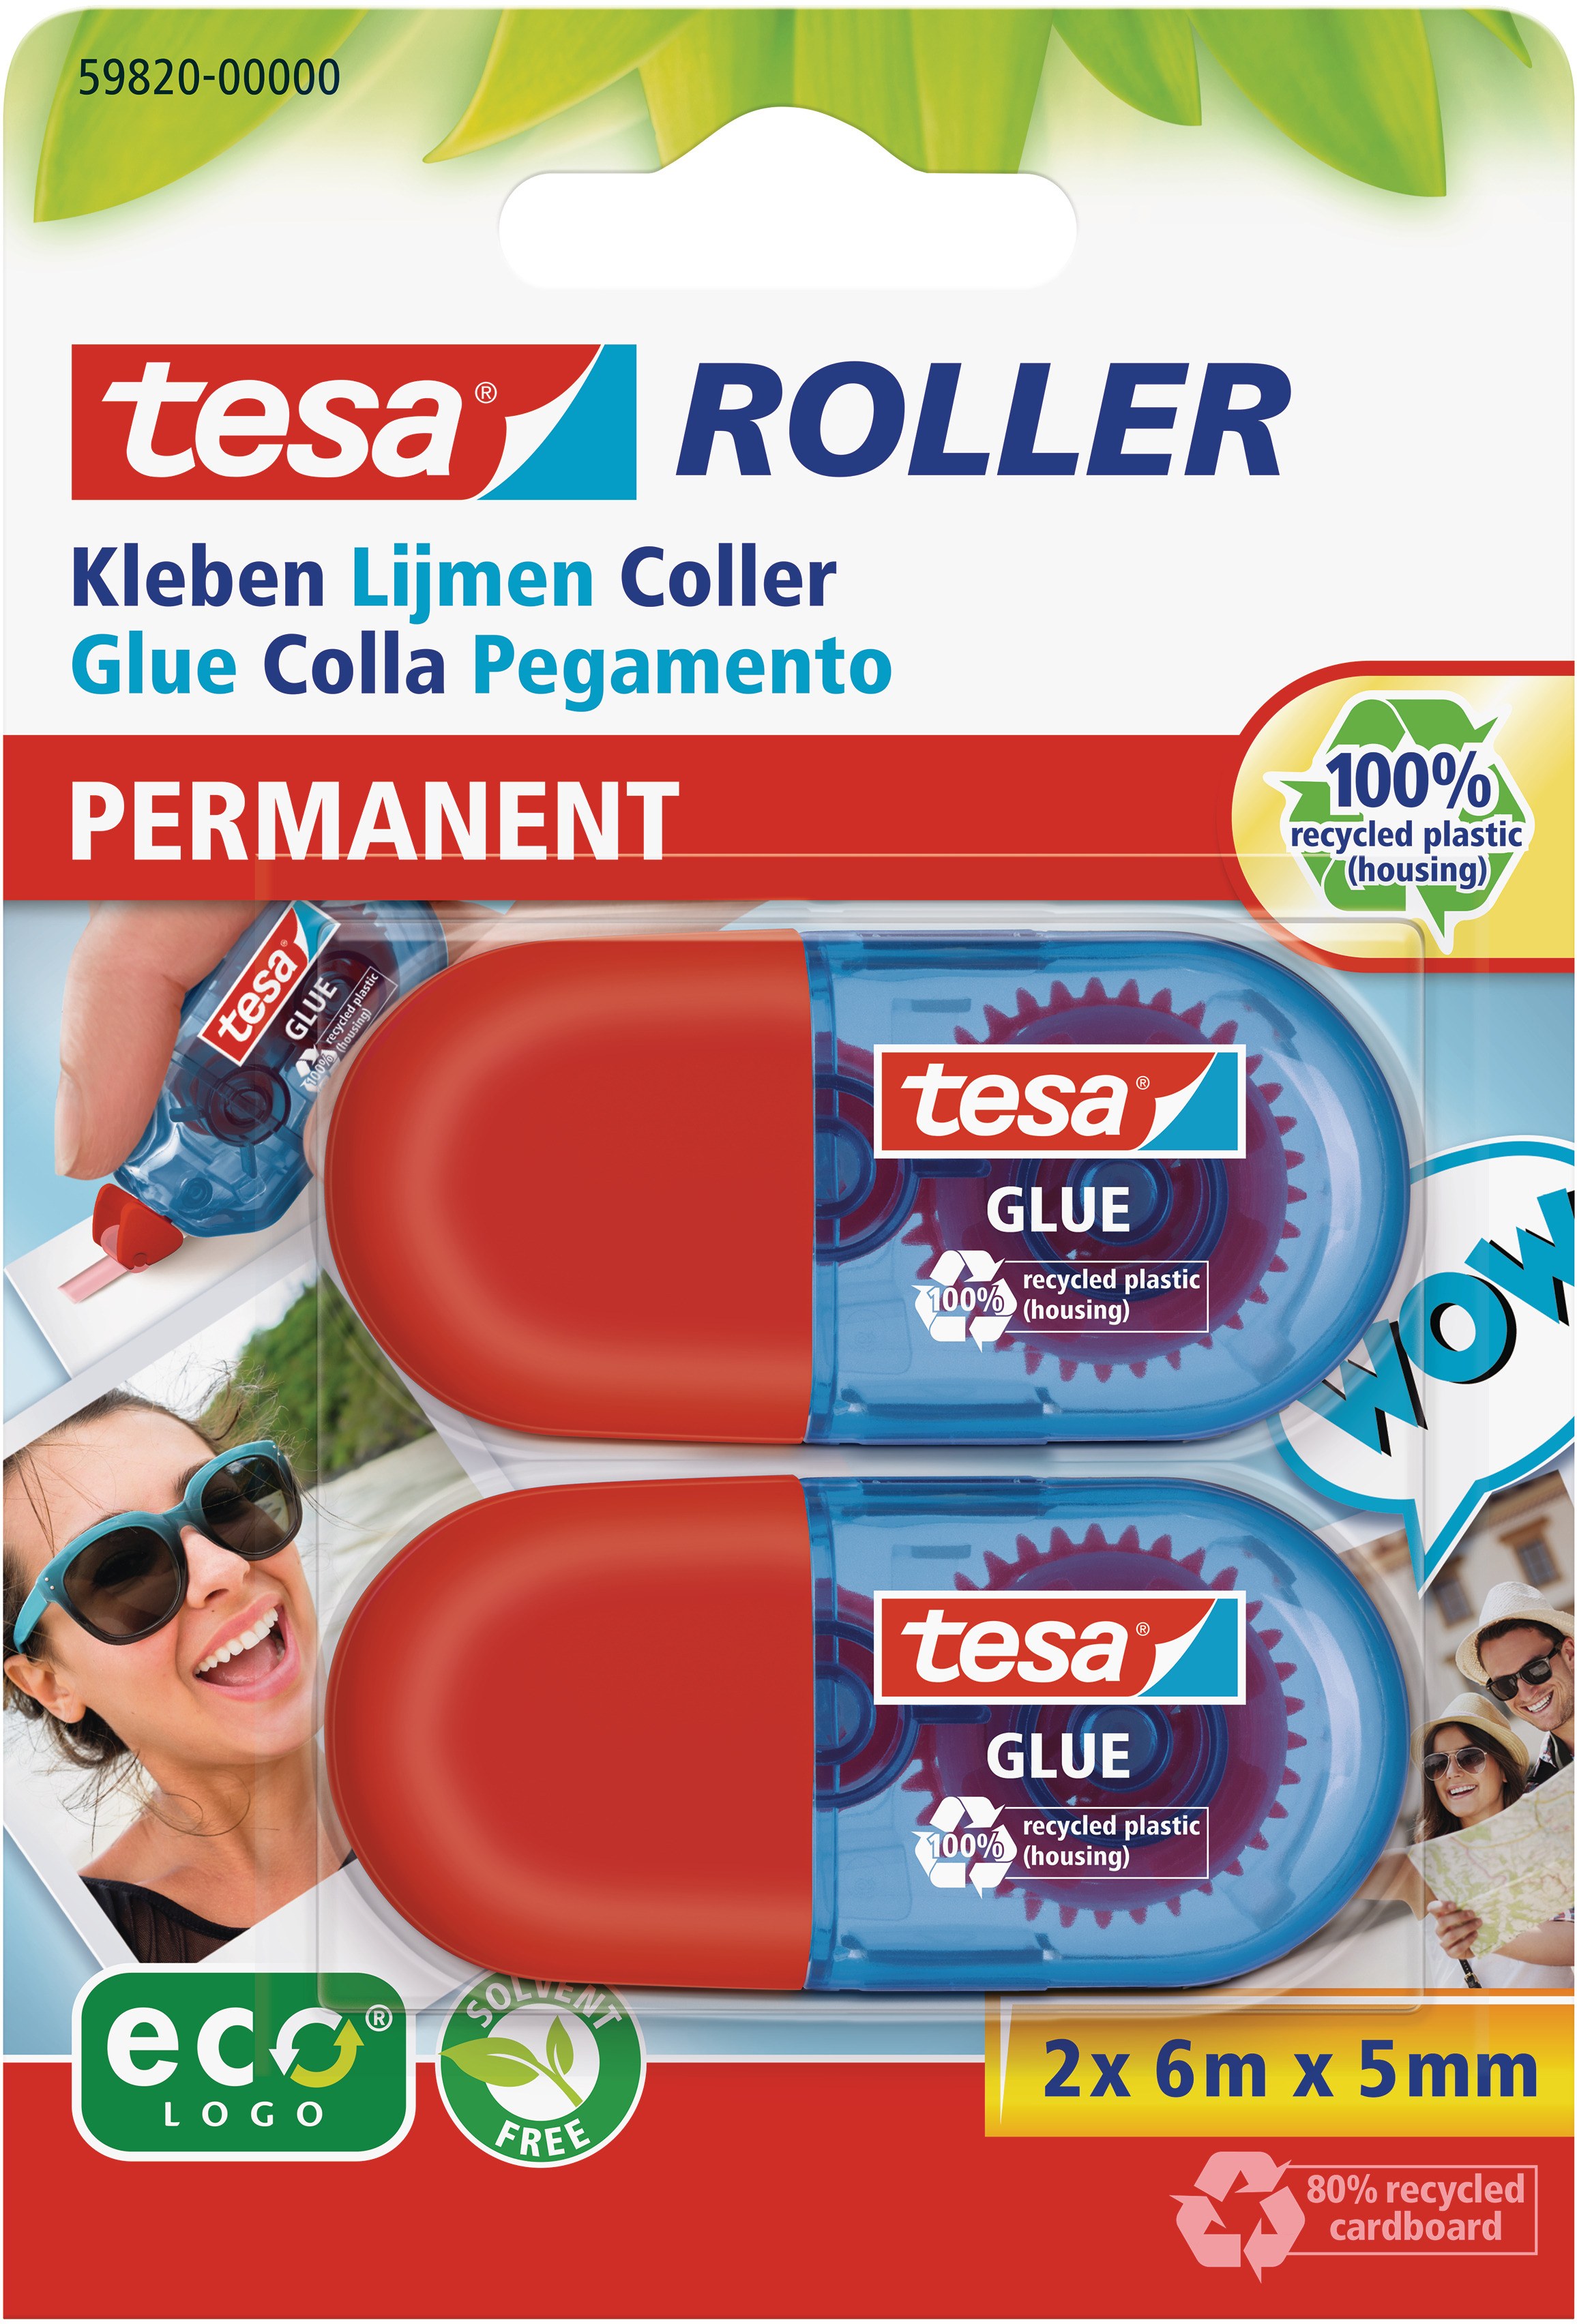 TESA Mini Roller de colle 6mx5mm 598200000 ecoLogo perm. blister